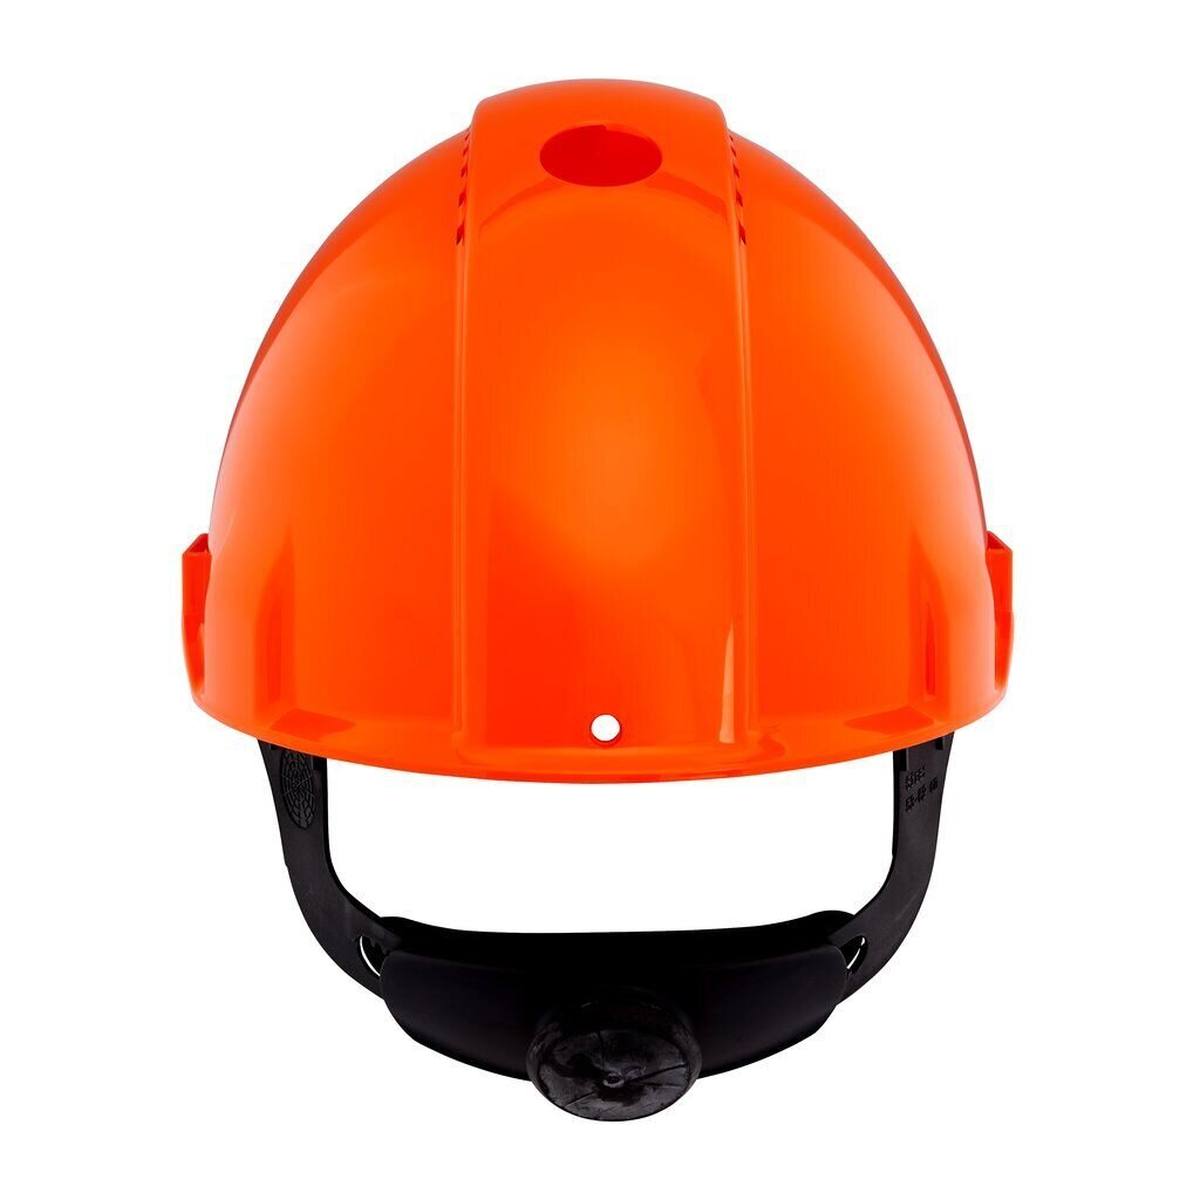 3M G3000 casque de protection G30NUO en orange, ventilé, avec uvicator, cliquet et bande de soudure en plastique